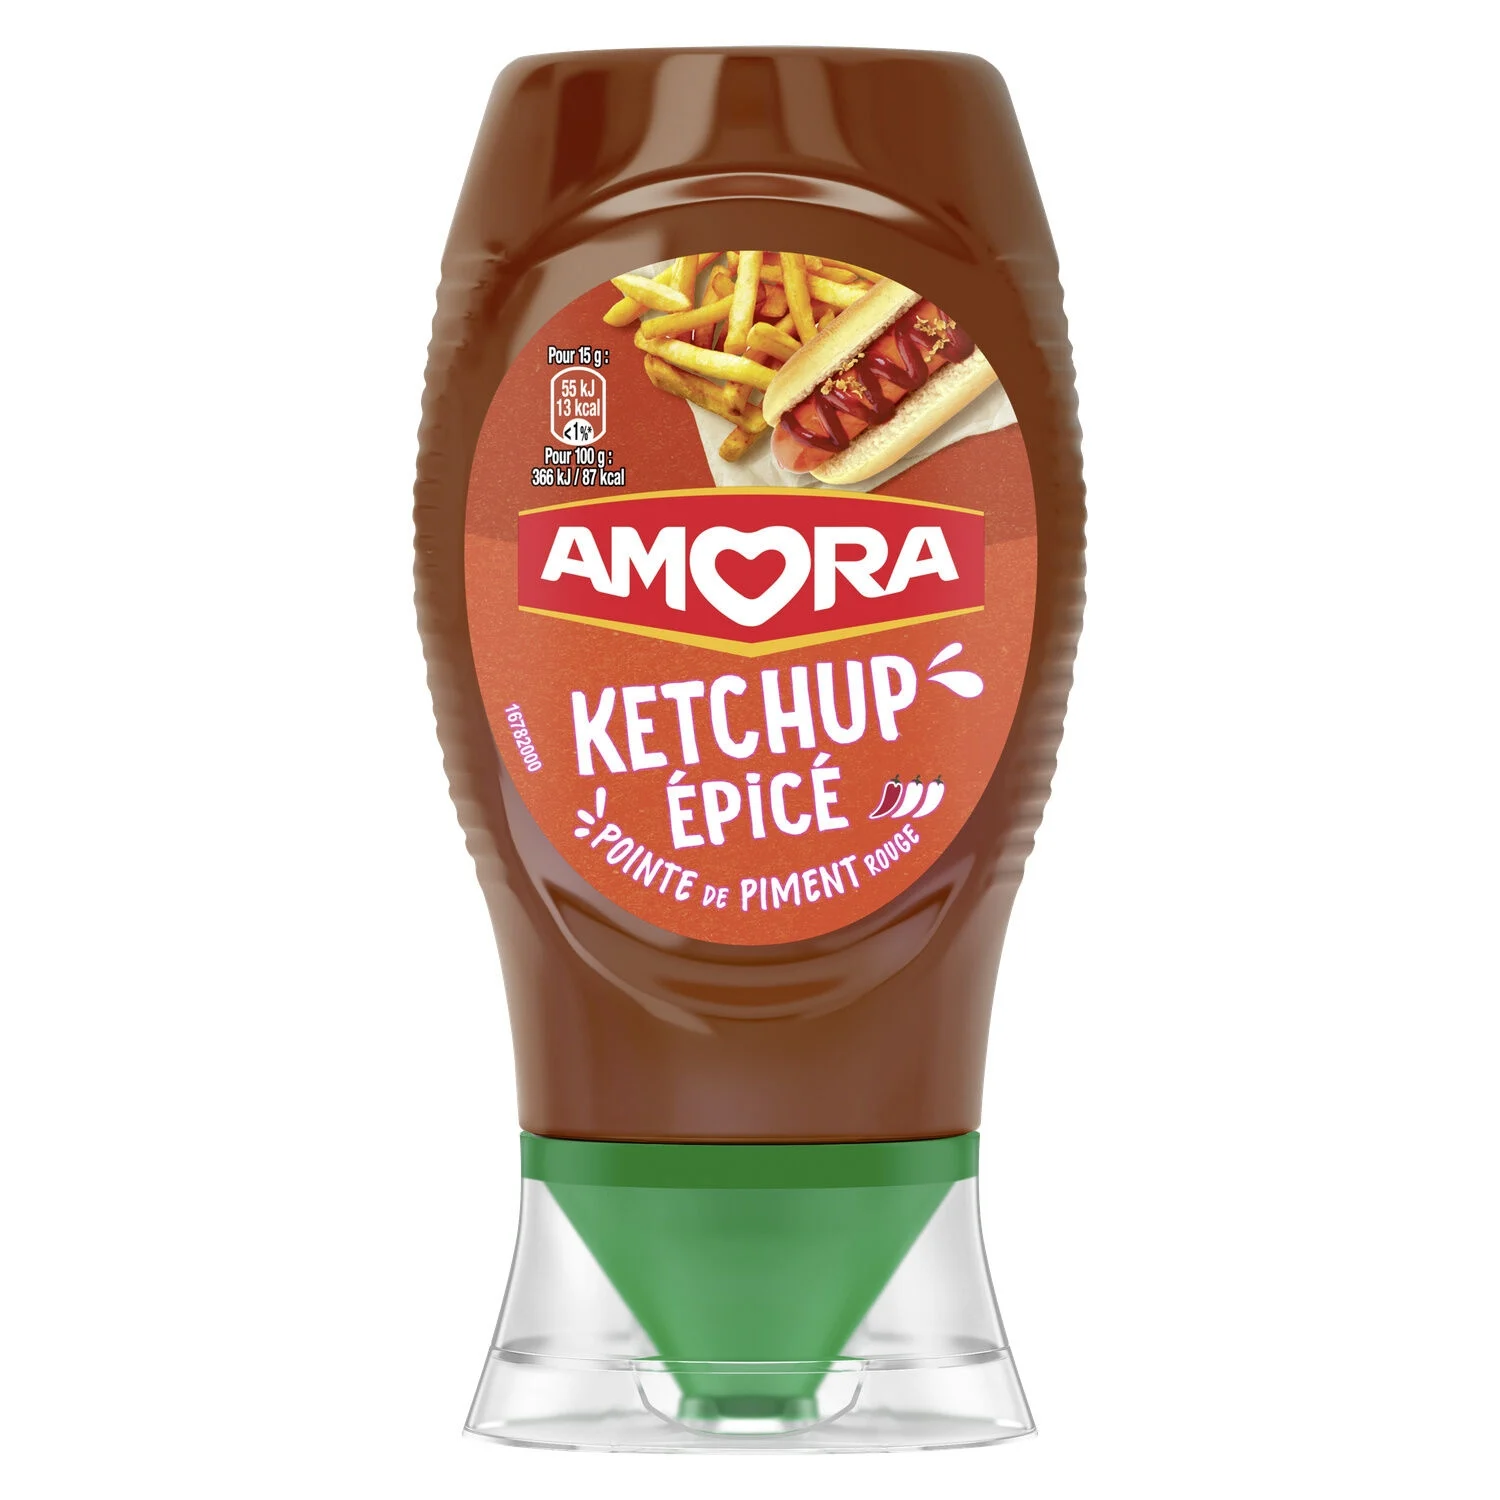 Amora Ketchup Epice 275g